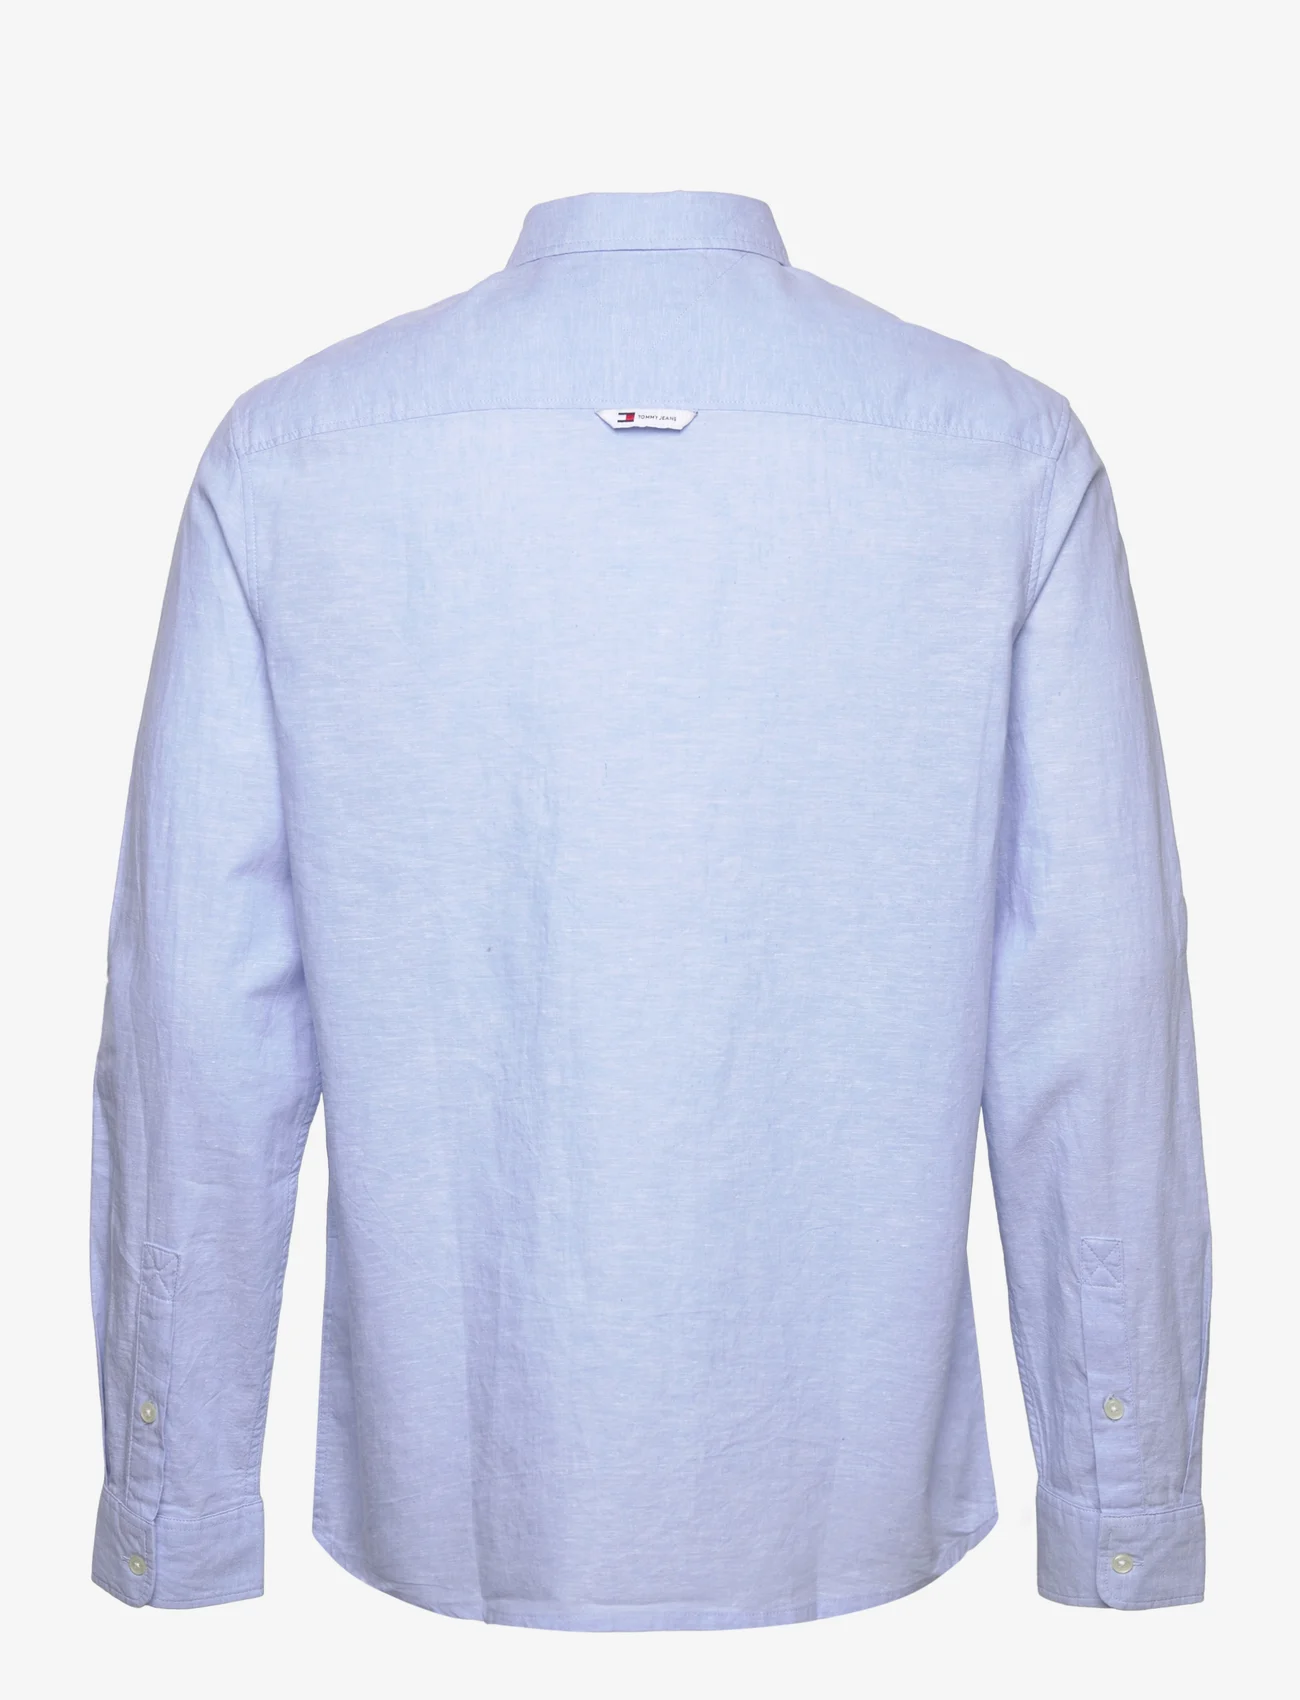 Tommy Jeans - TJM REG LINEN BLEND SHIRT - linnen overhemden - moderate blue - 1